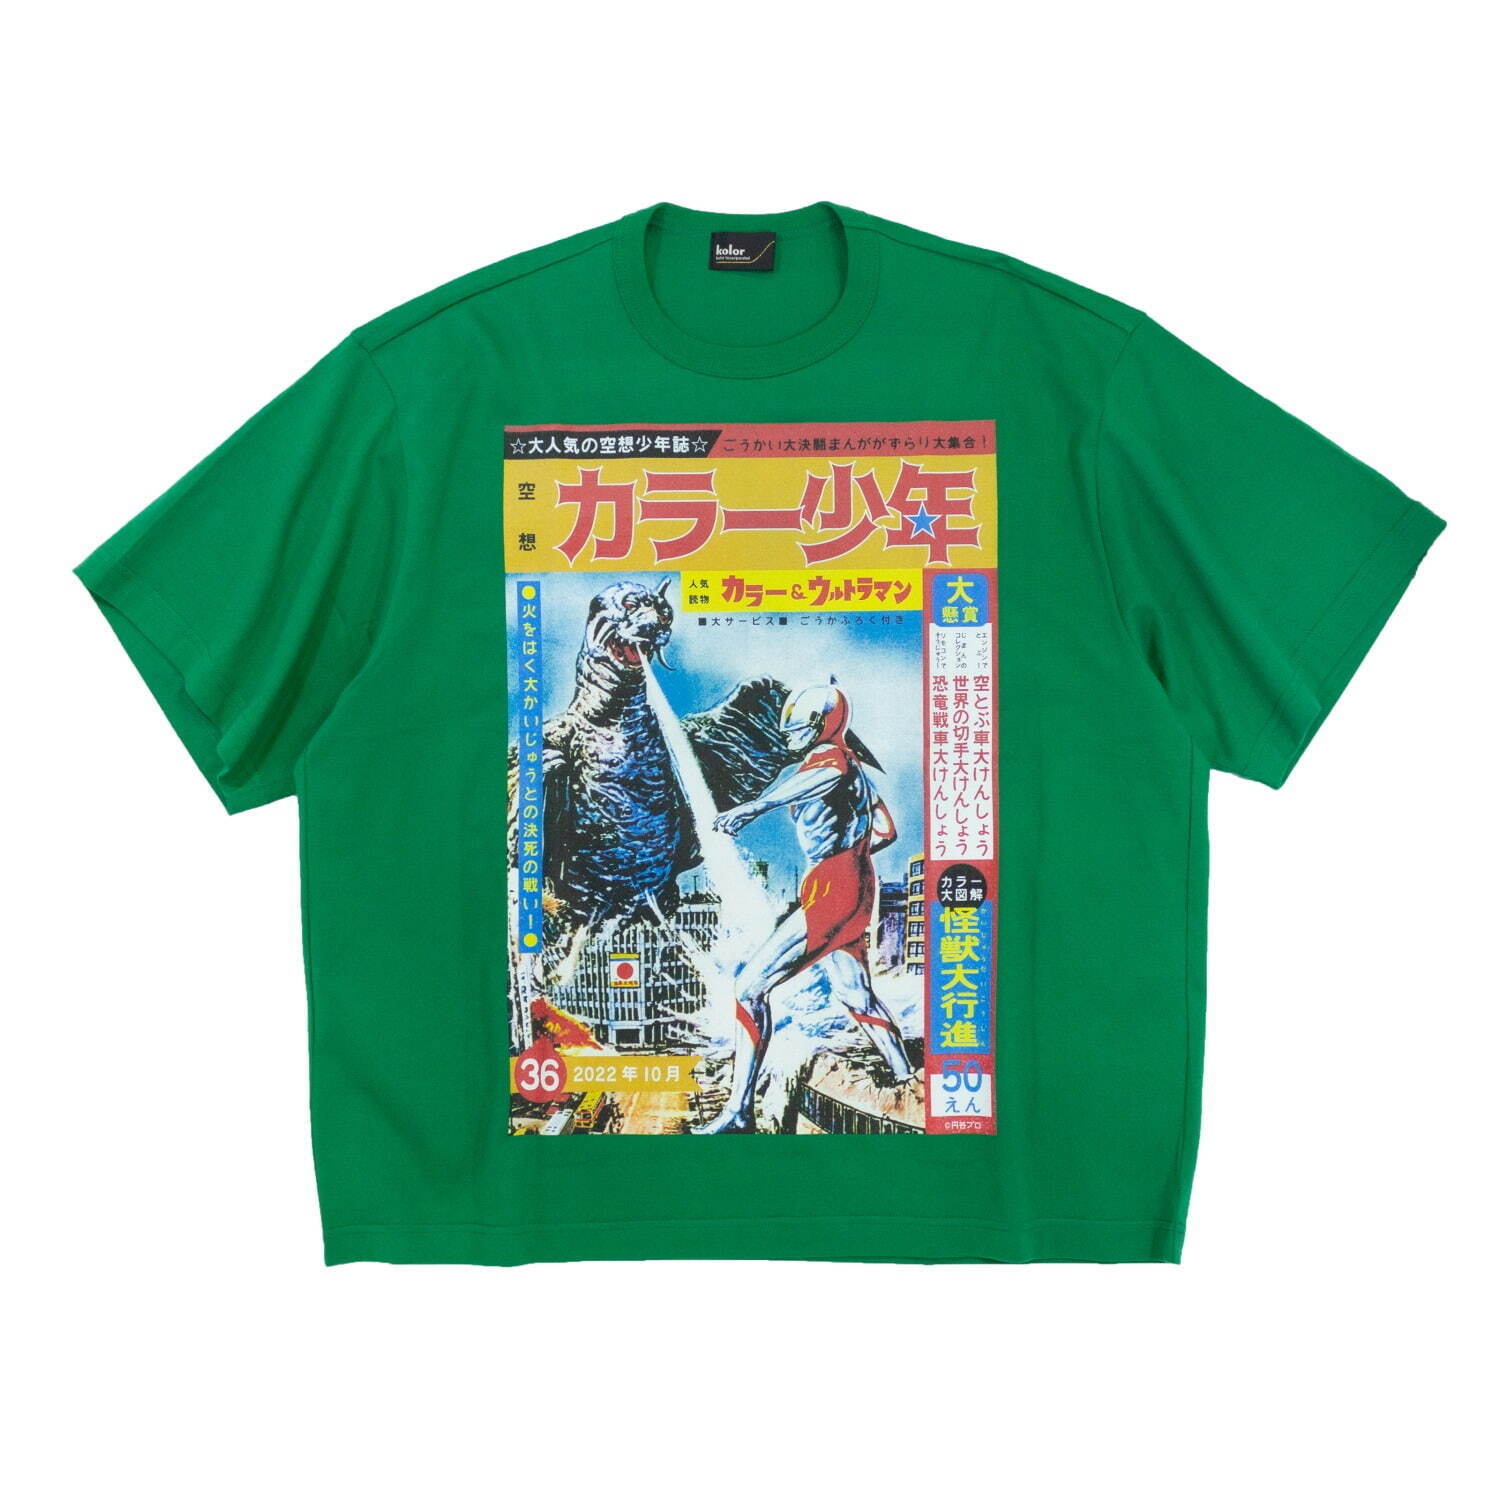 カラー & ウルトラマン カラー少年 Tee 17,600円